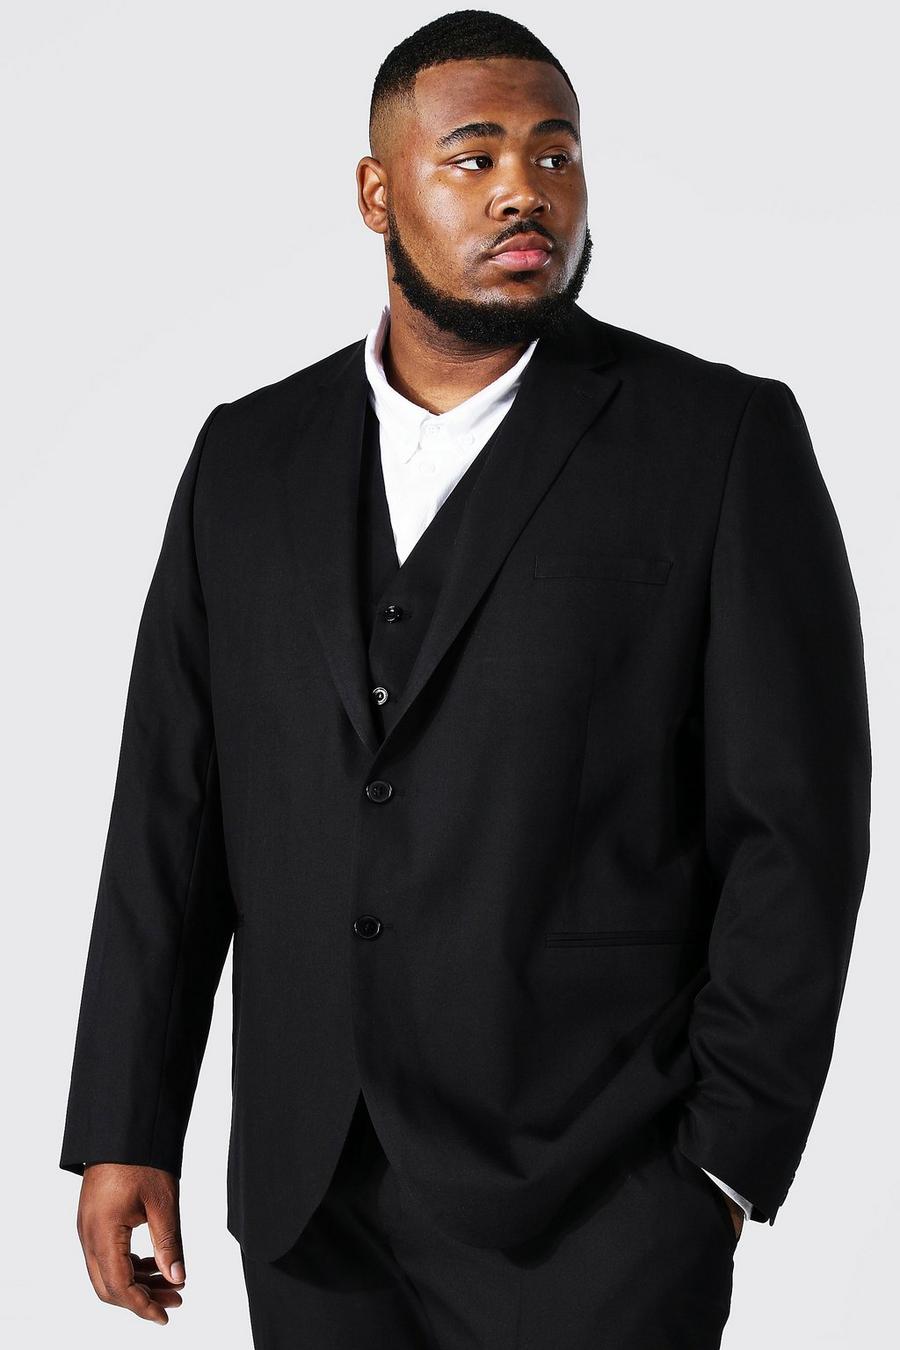 שחור black ז'קט חליפה בגזרה צרה עם רכיסה בודדת, למידות גדולות